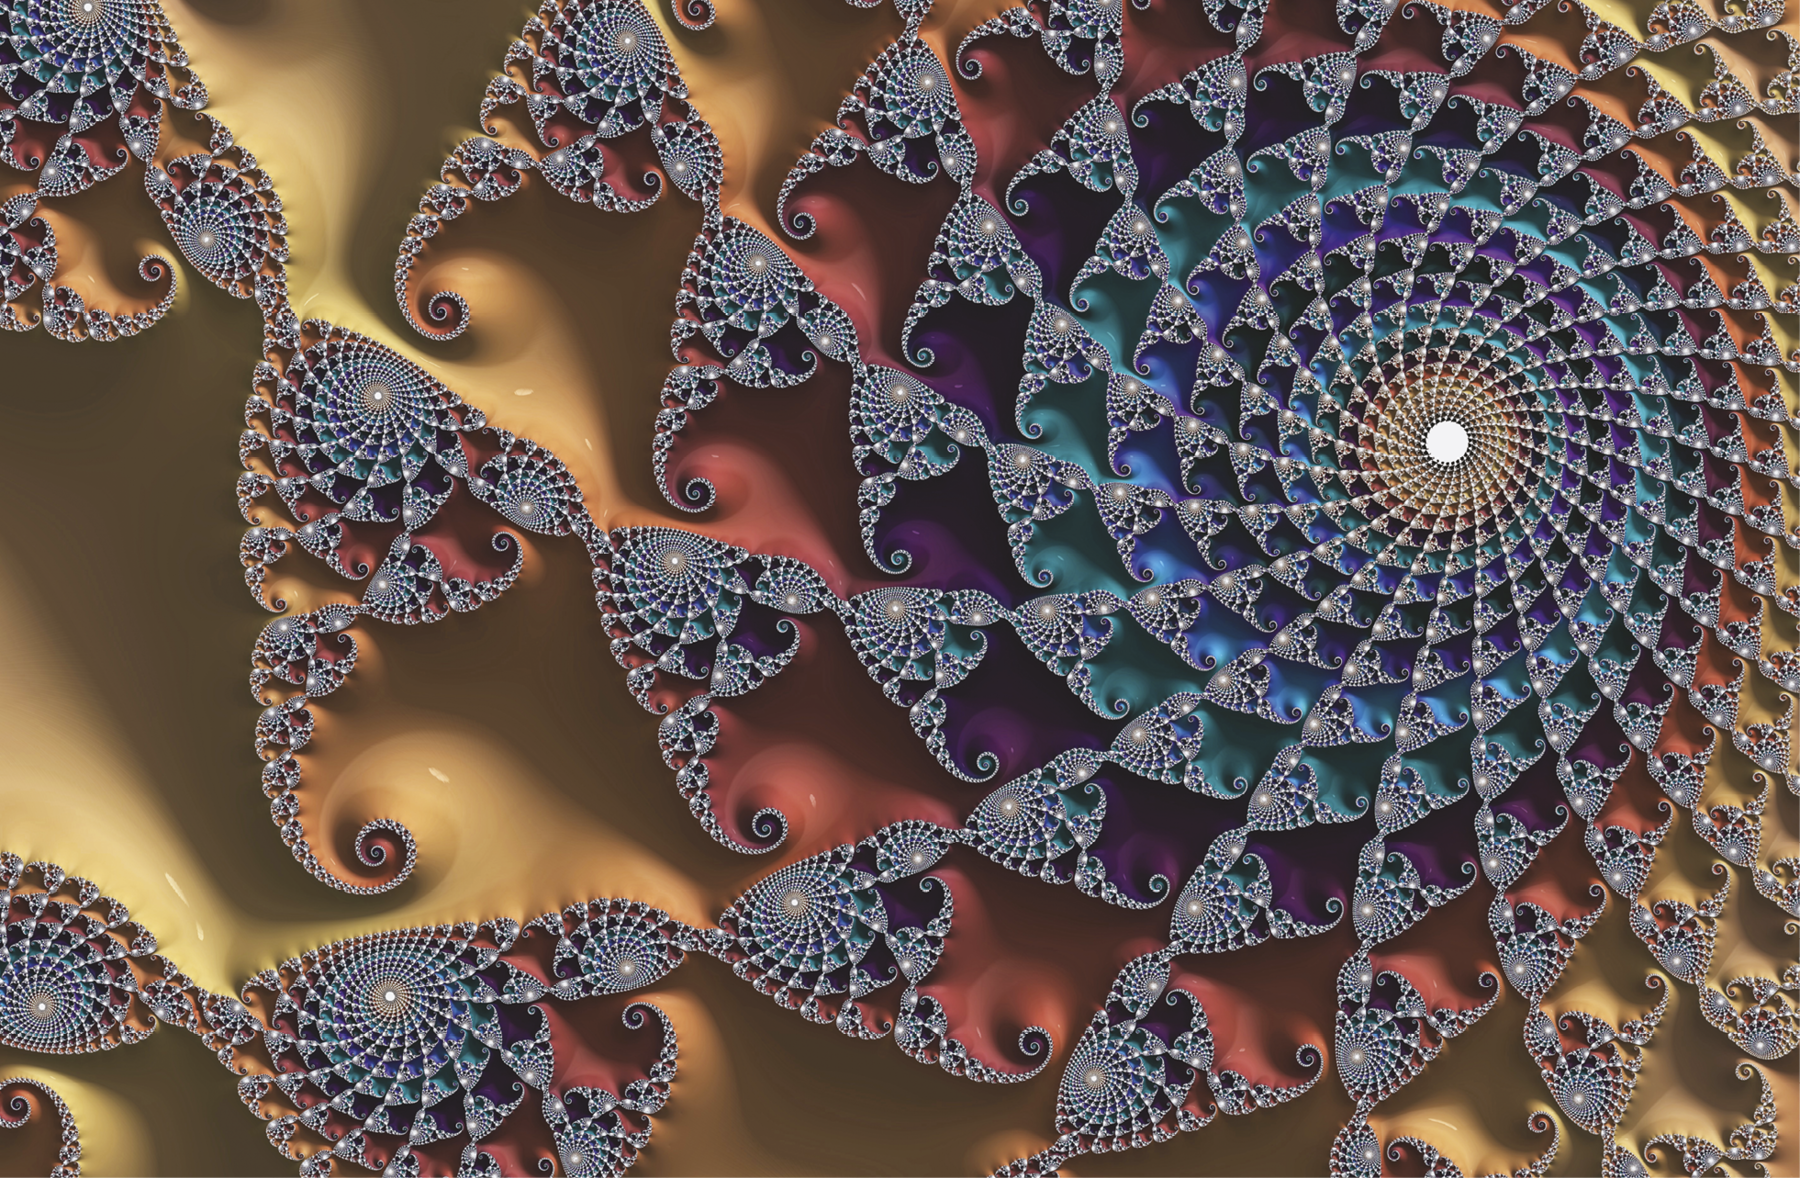 Fotografia. Fractal composto por linhas coloridas com peças iguais prateadas formando um espiral à direita.